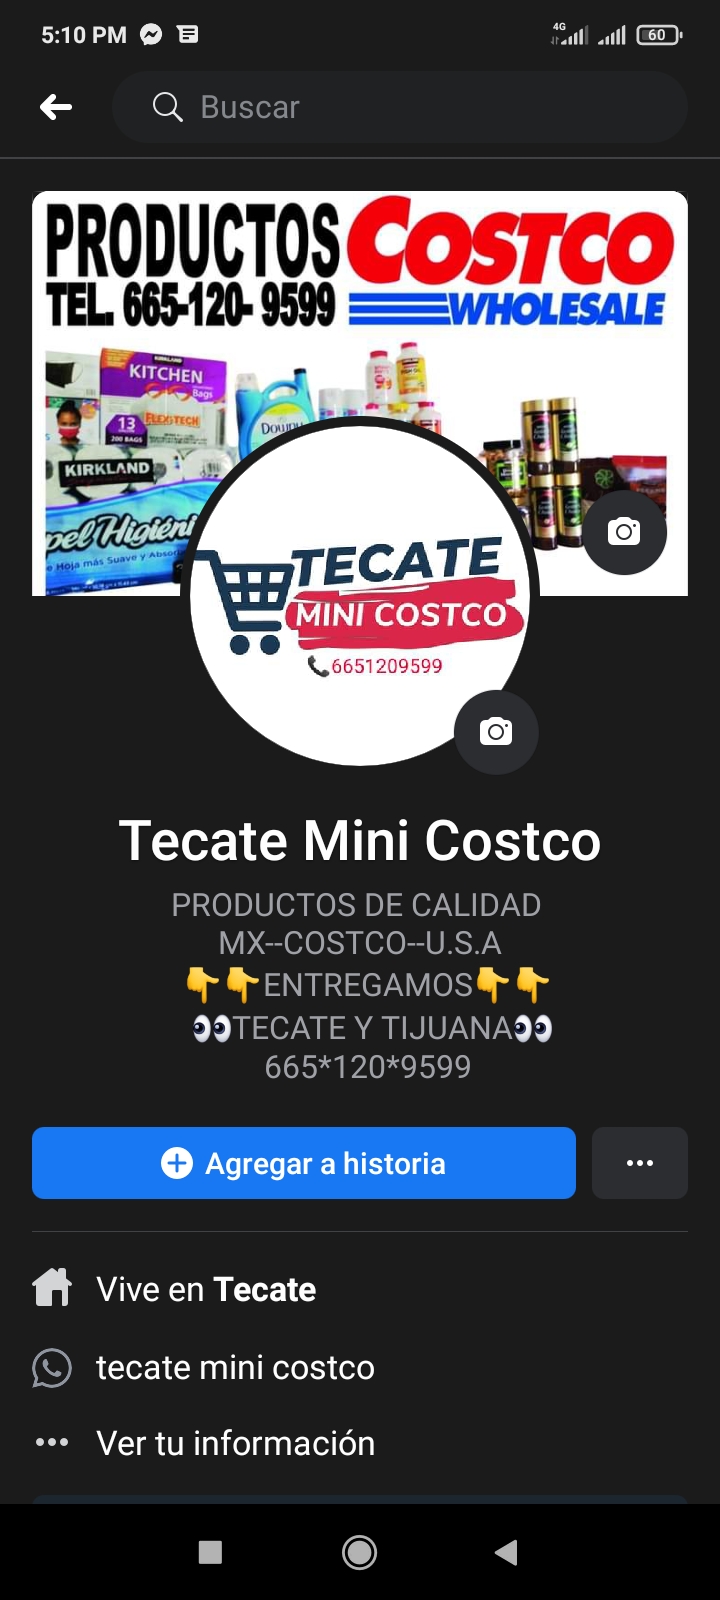 Tecate mini costco | Carretera a Tecate/ Ensenada Ruta del vino km 7, los laureles, 21507 Tecate, B.C., Mexico | Phone: 665 120 9599